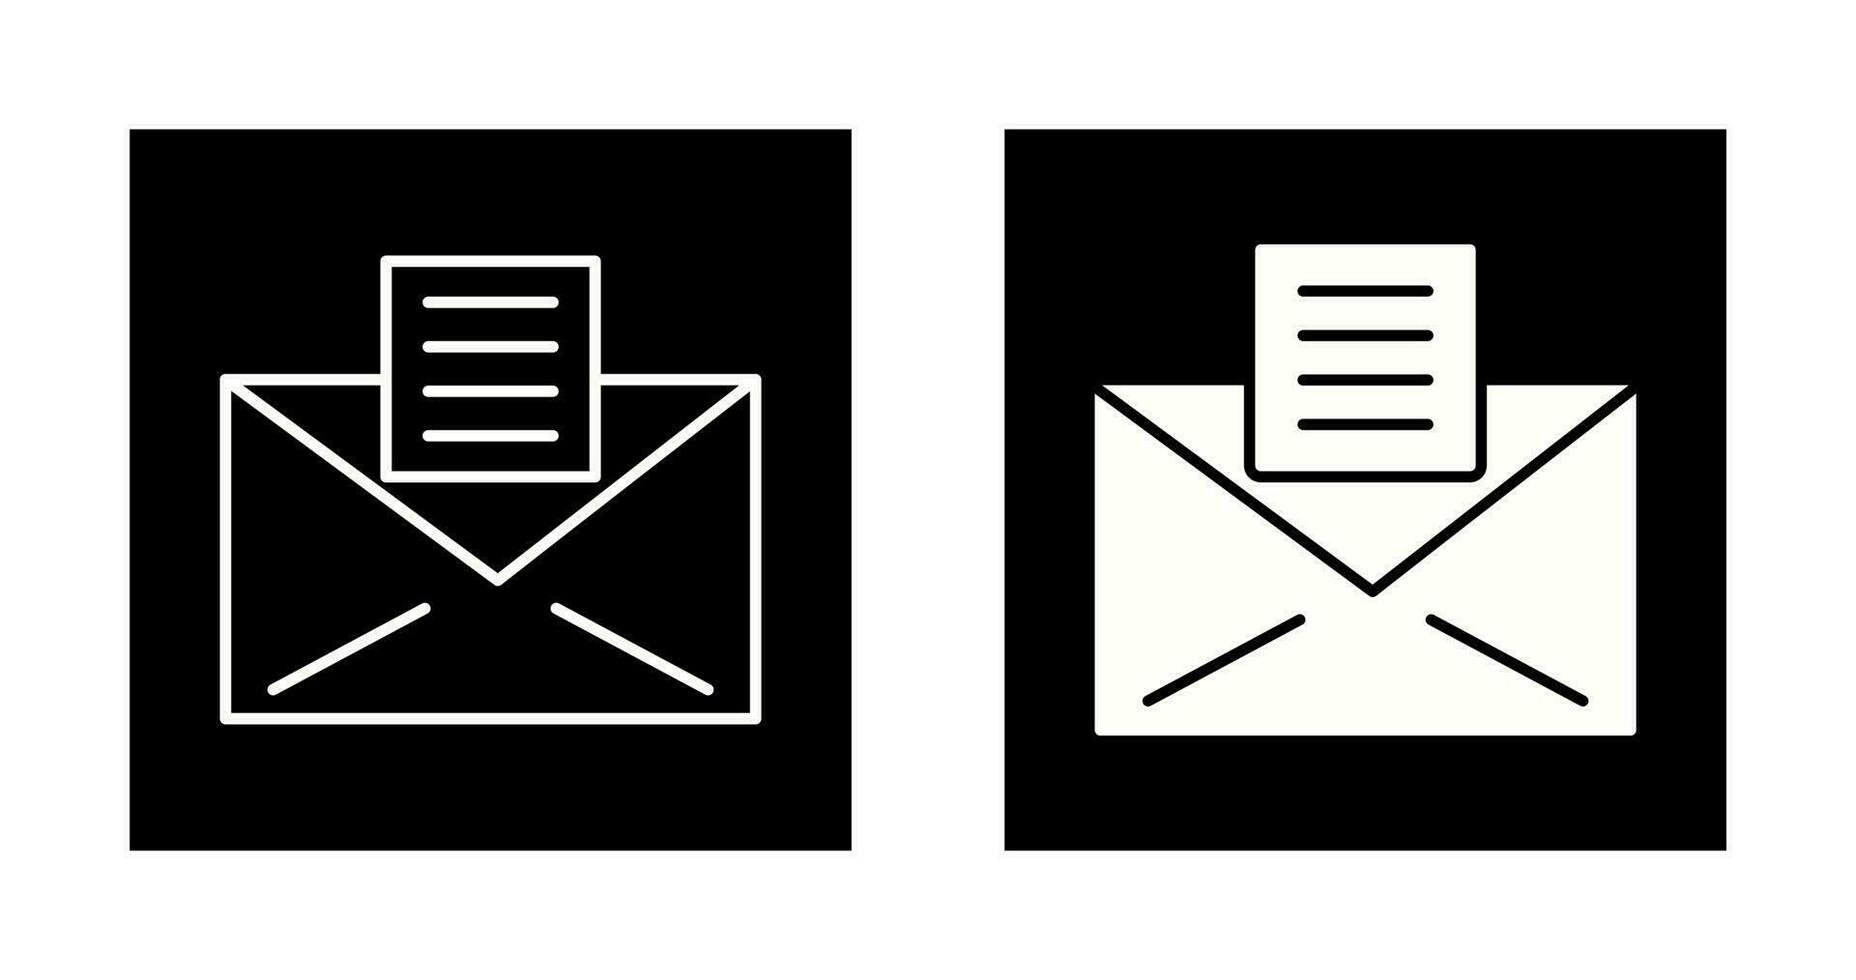 icono de vector de documentos de correo electrónico